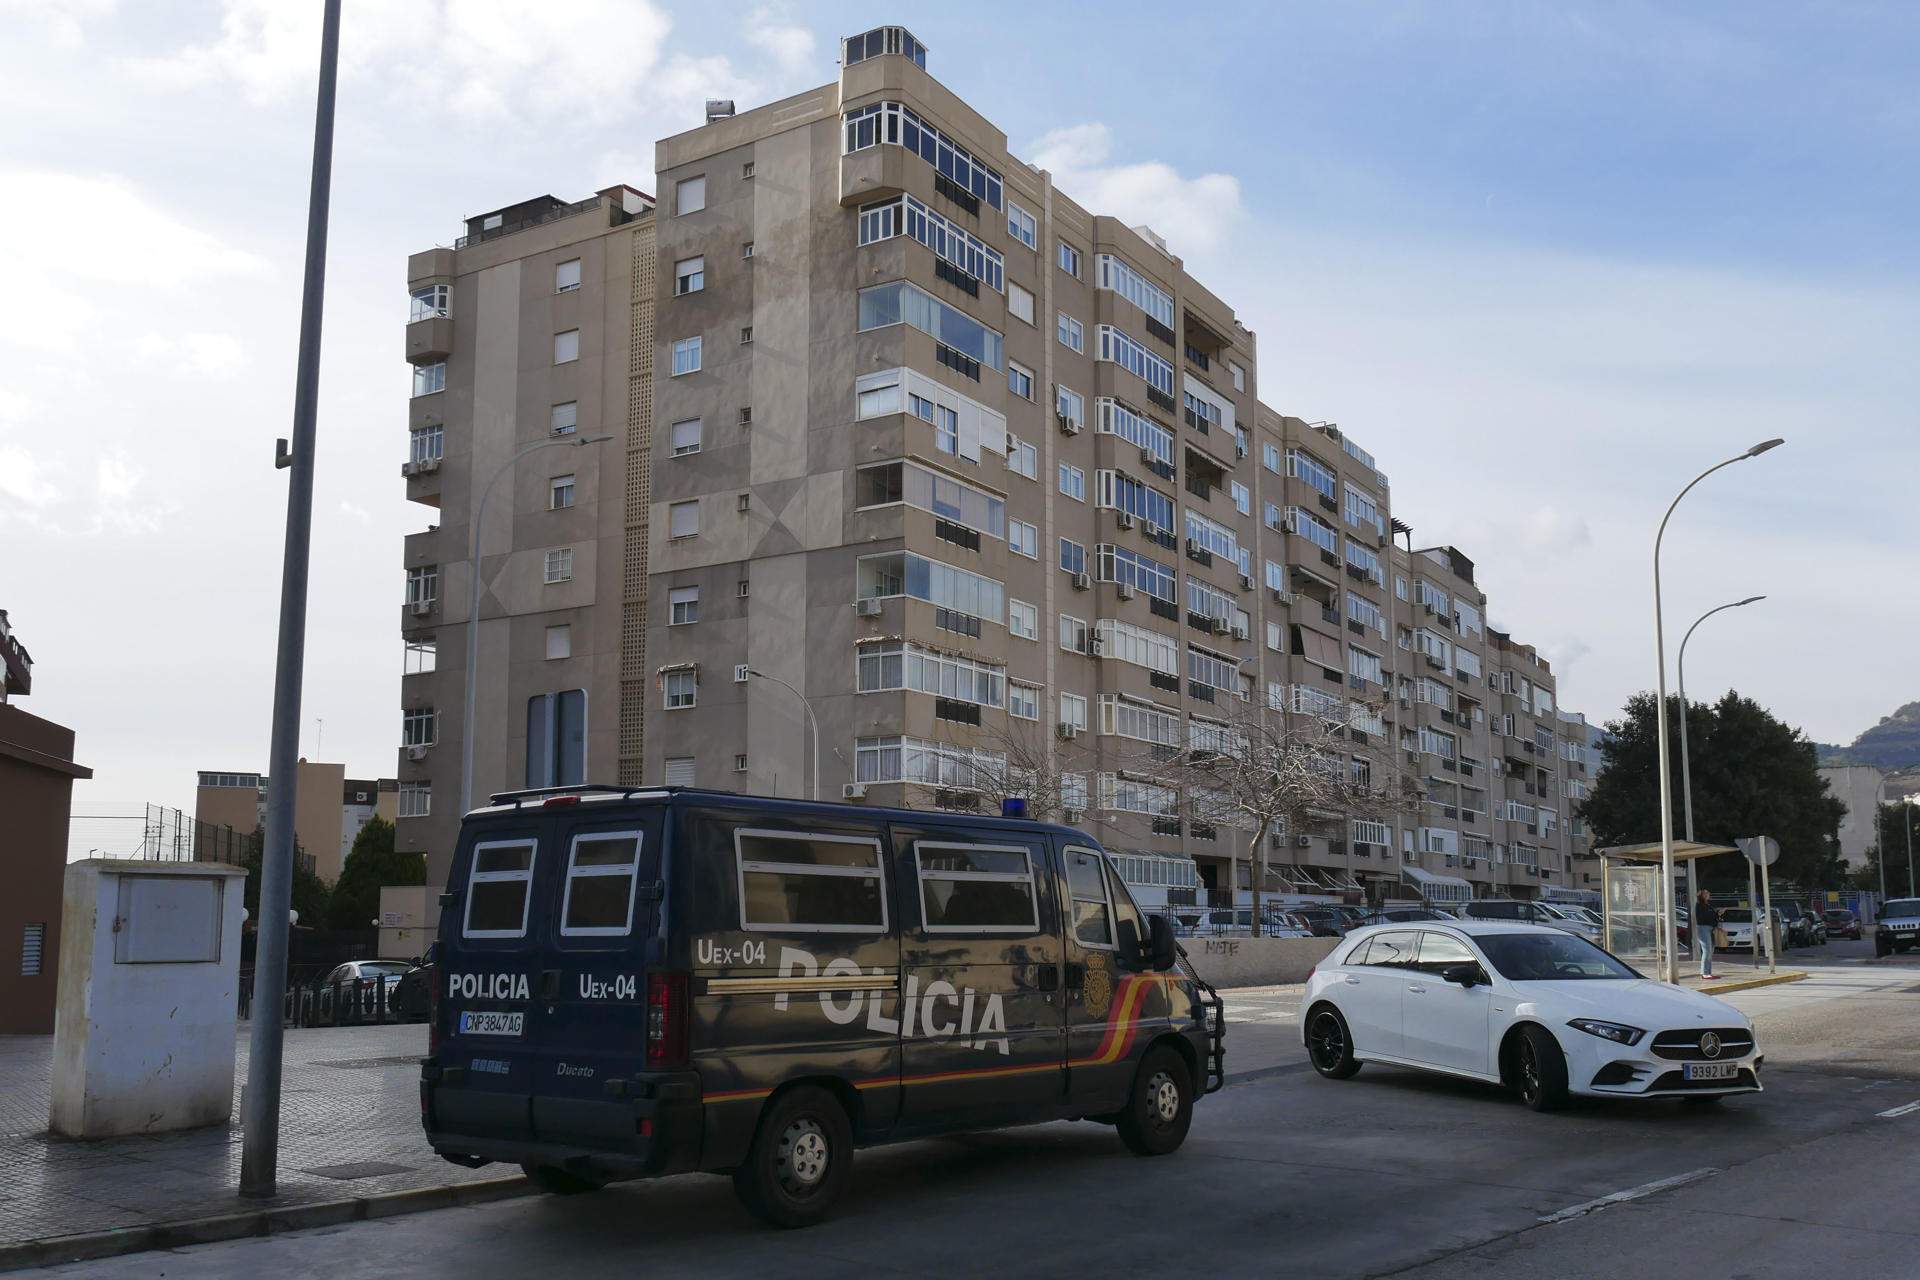 Tres exconsellers del govern de Melilla del CpM, a presó preventiva sense fiança